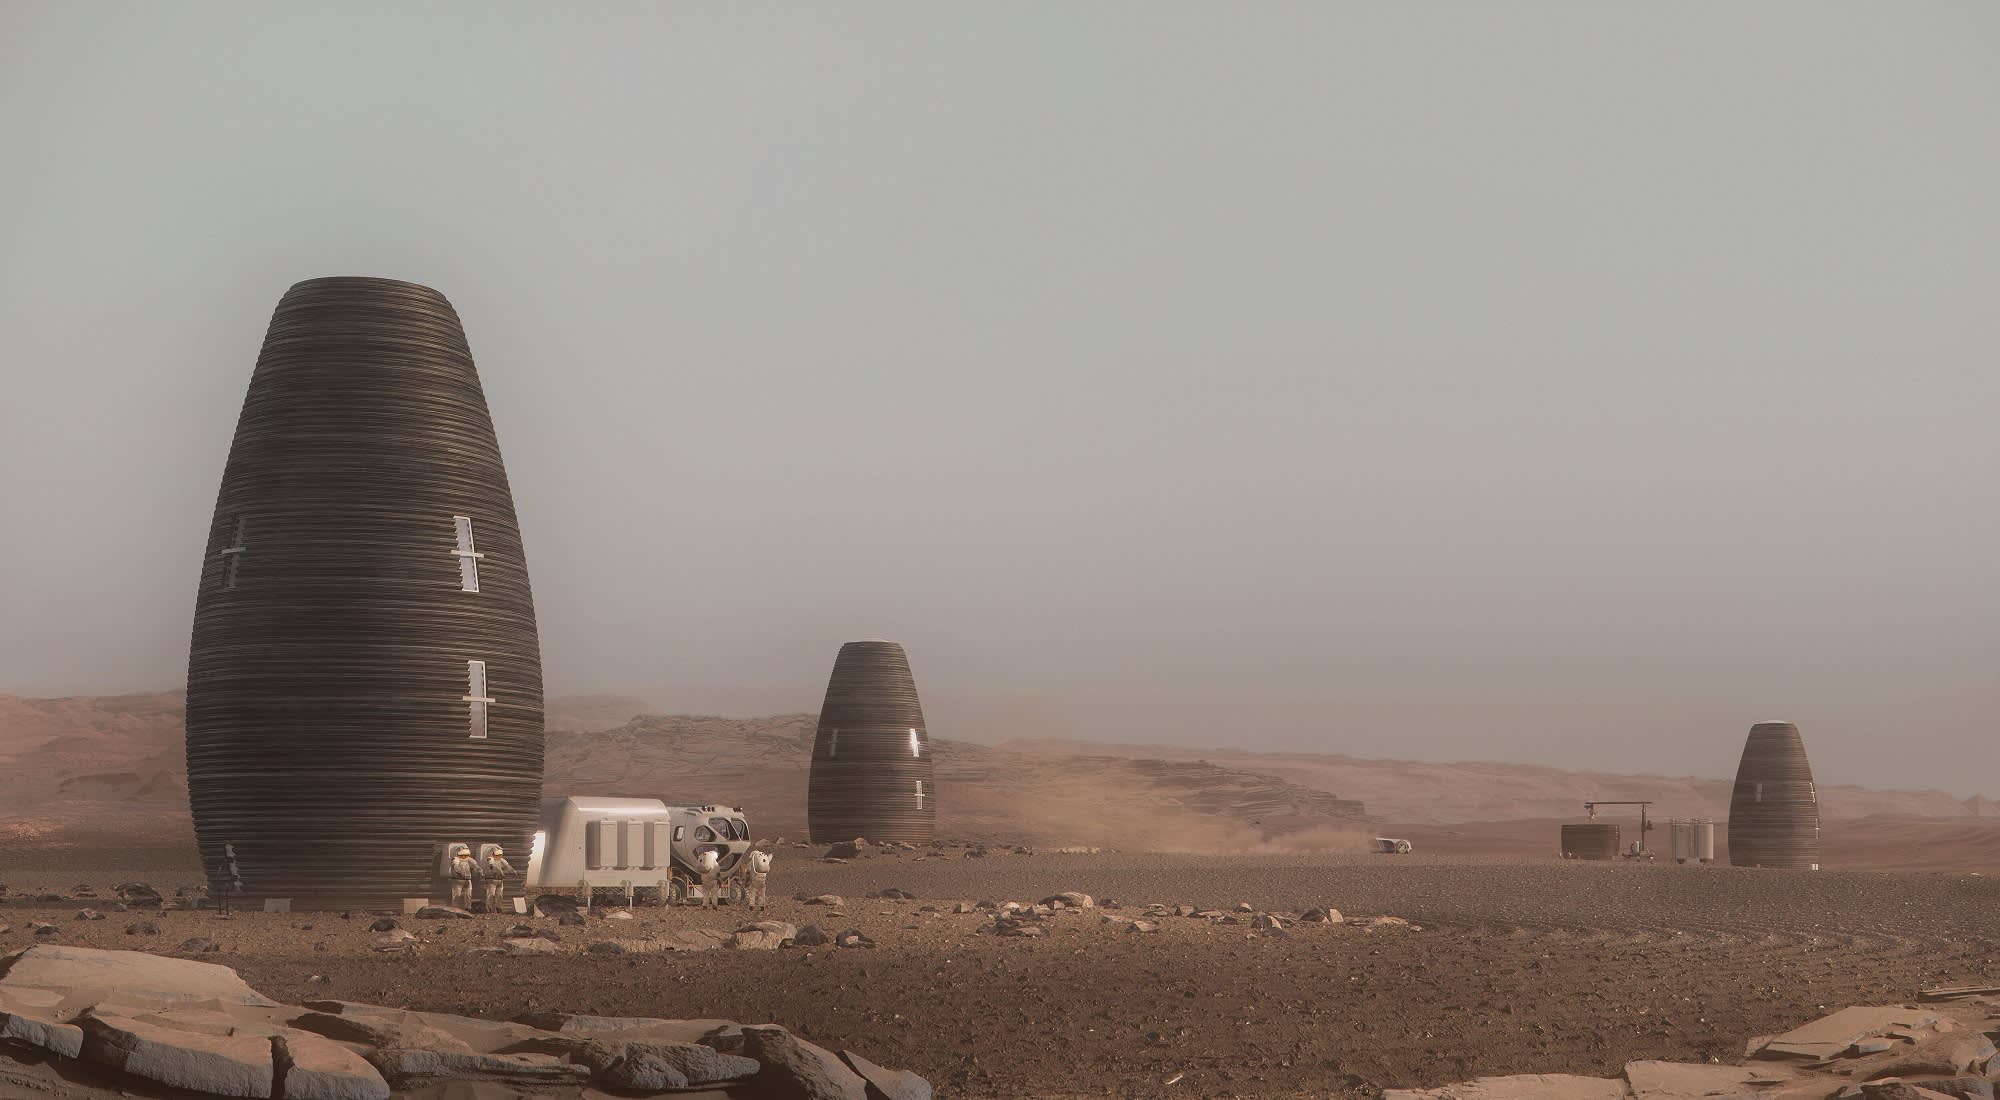 Mars Colony Living Quarters